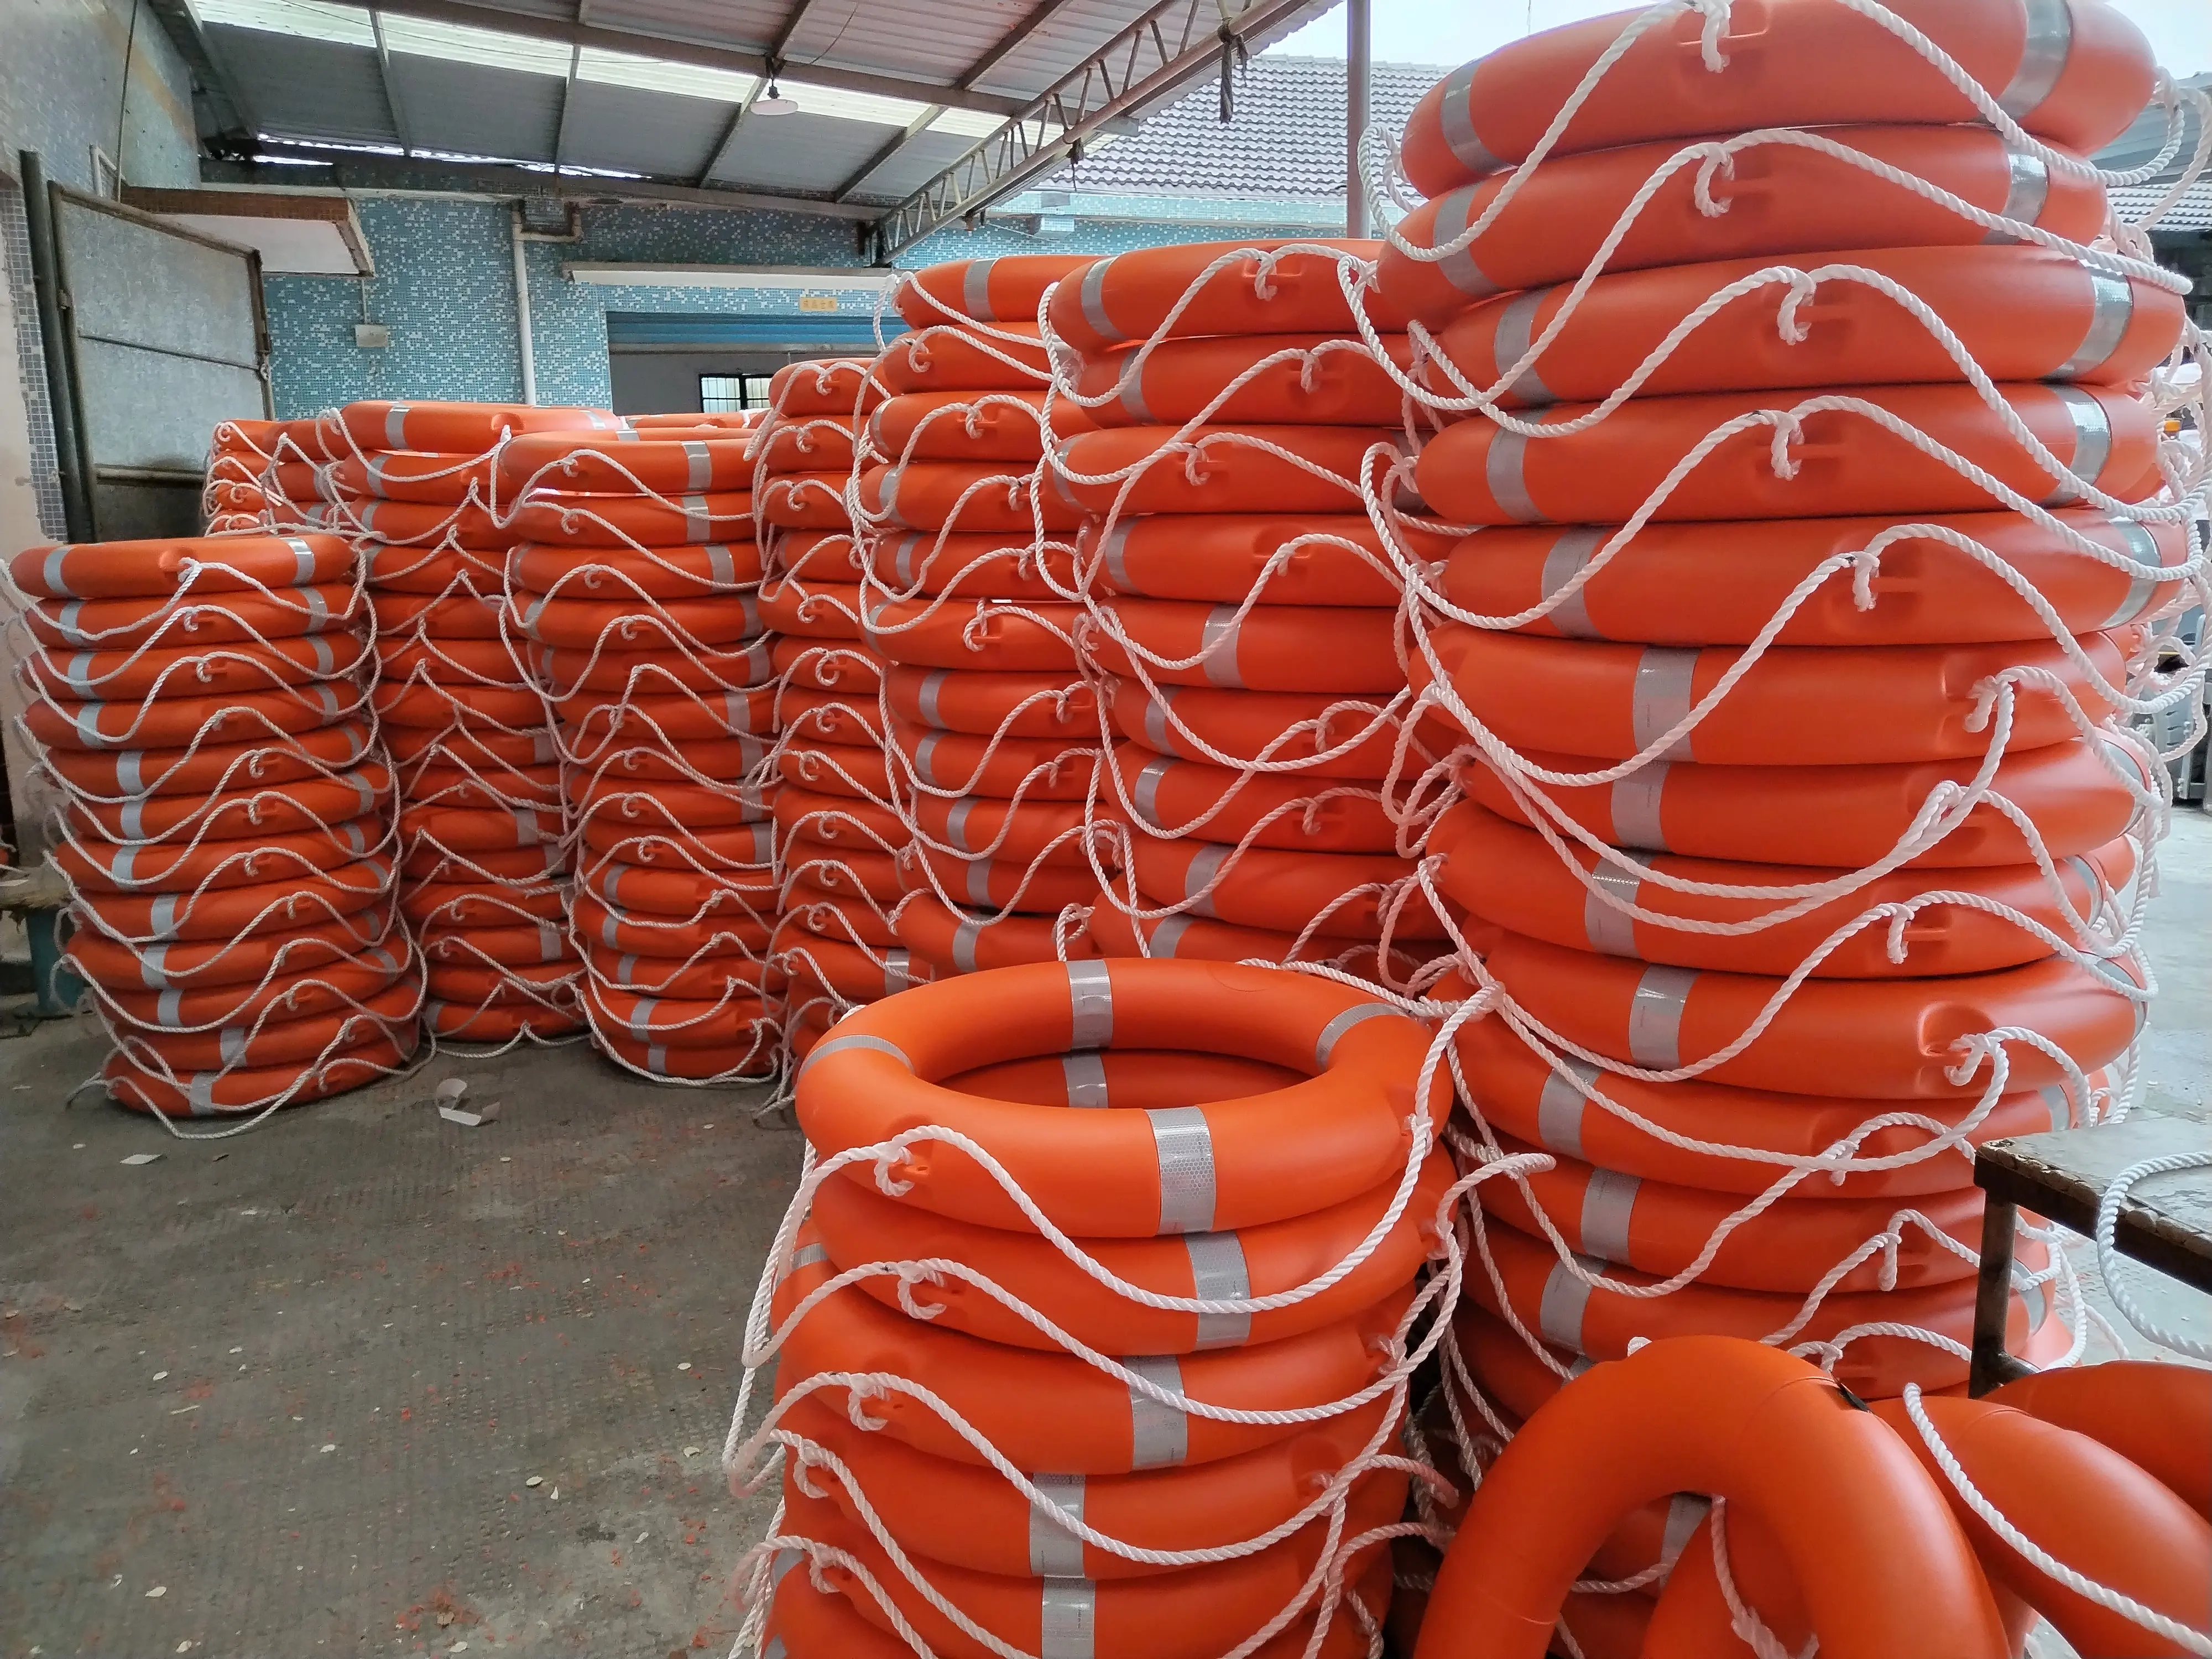 באיכות גבוהה במפעל ישיר SOLAS הימי שחייה הצלת חיים מצוף 2.5kg